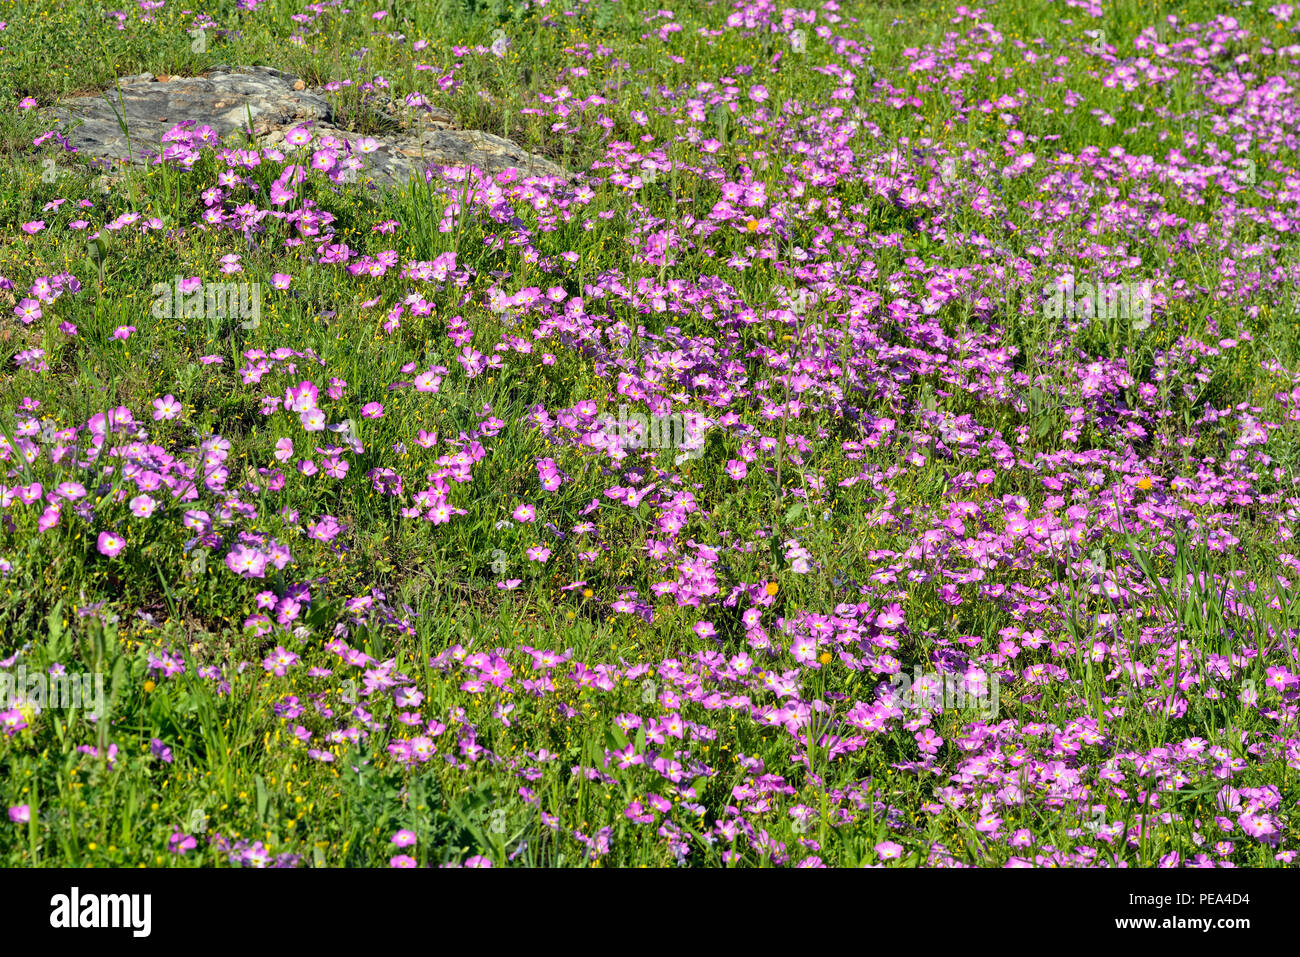 Flowering phlox near roadside, Hwy 46 near New Braunfels, Texas, USA Stock Photo